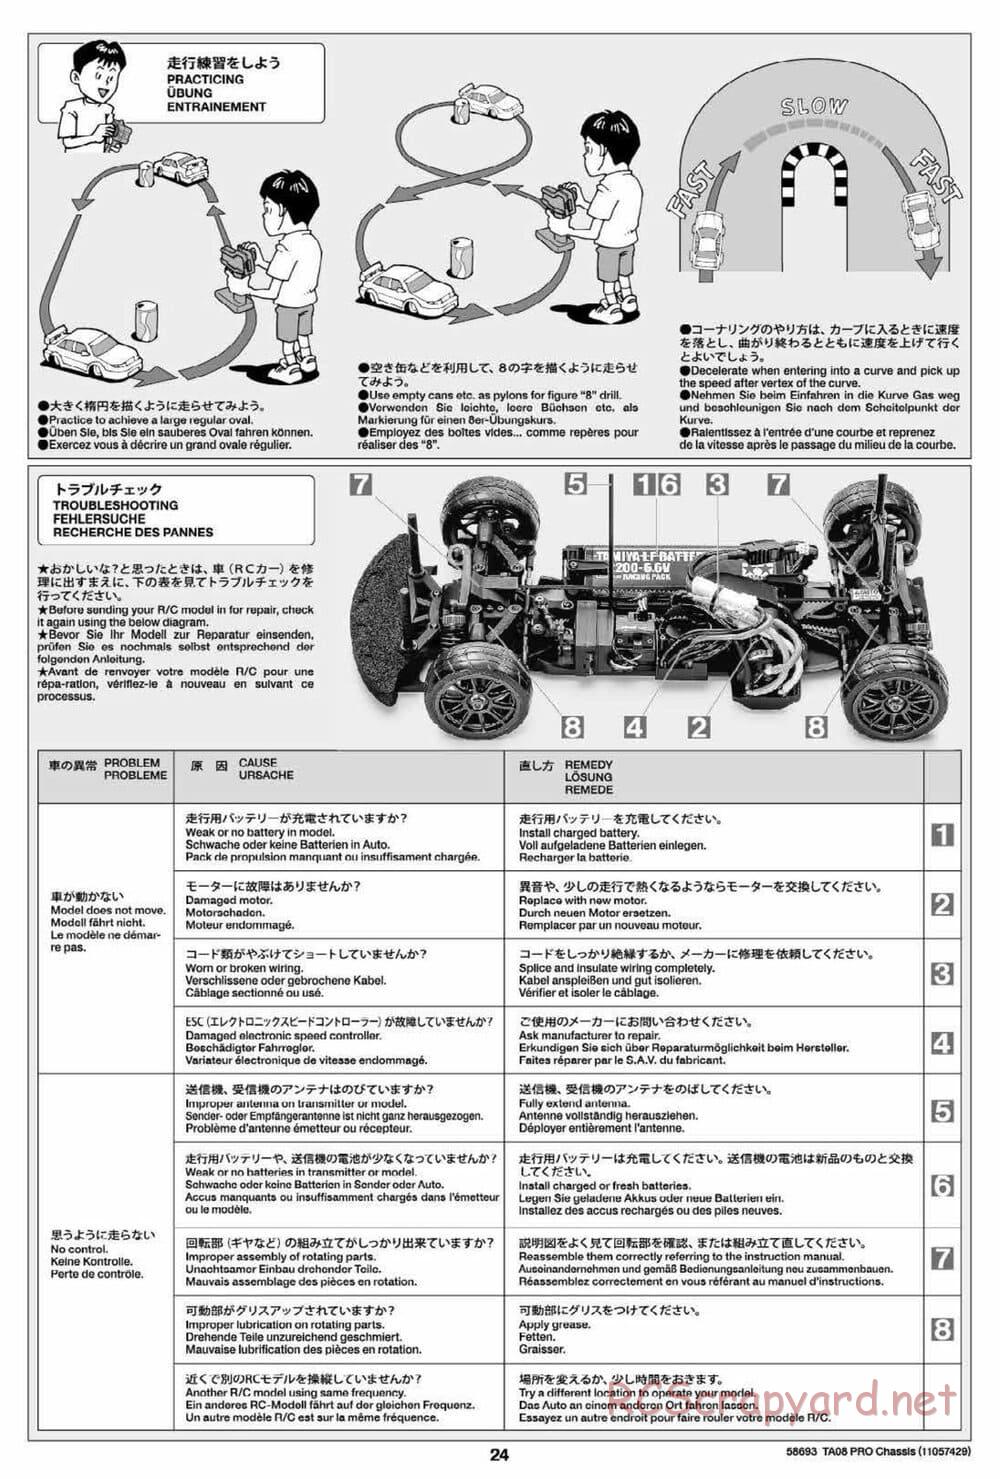 Tamiya - TA08 Pro Chassis - Manual - Page 24